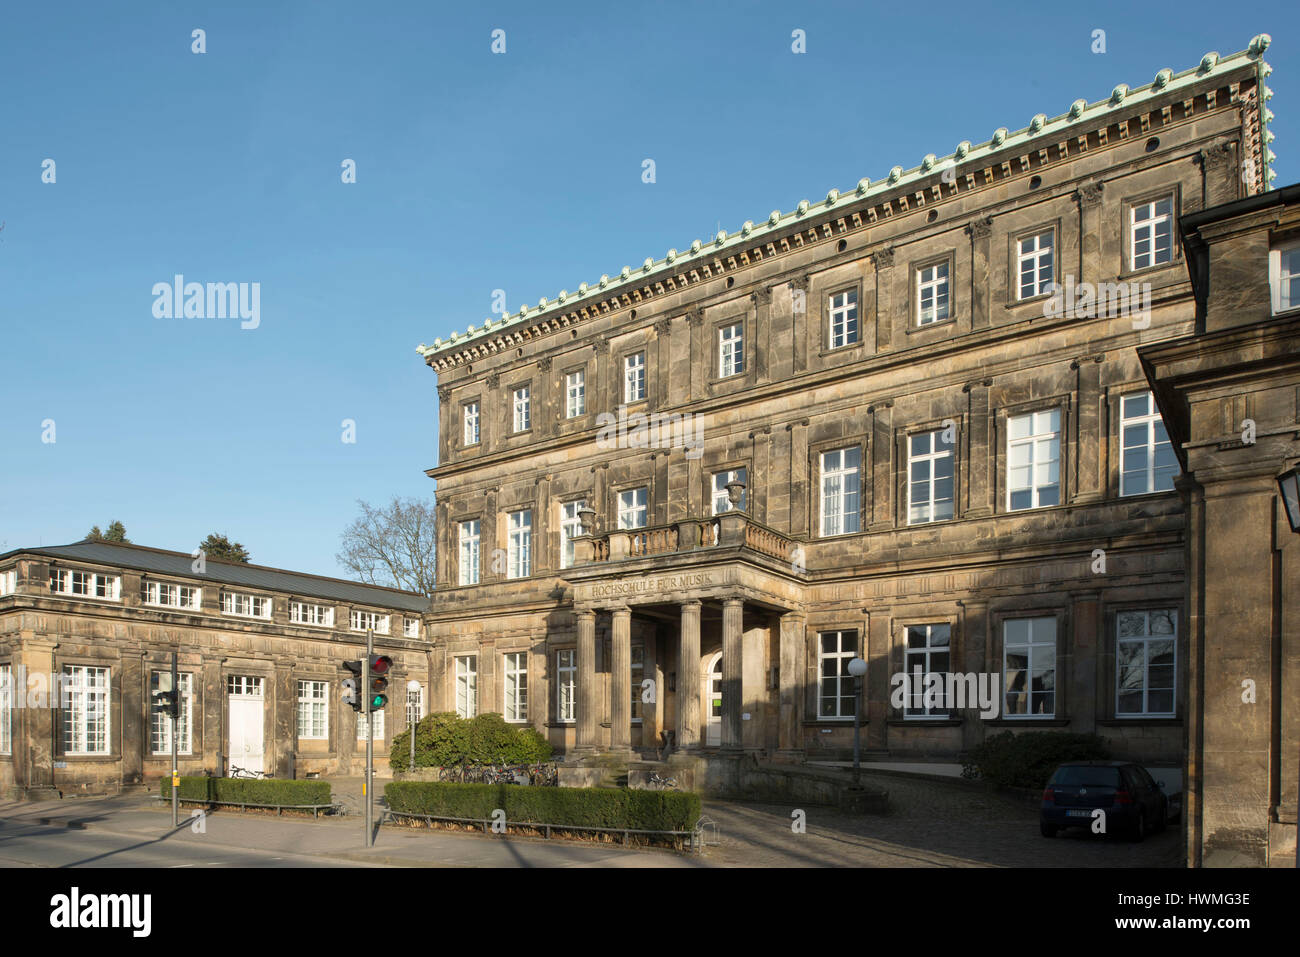 Deutschland, Nordrhein-Westfalen, Detmold, Hochschule für Musik, Neues Palais Stock Photo